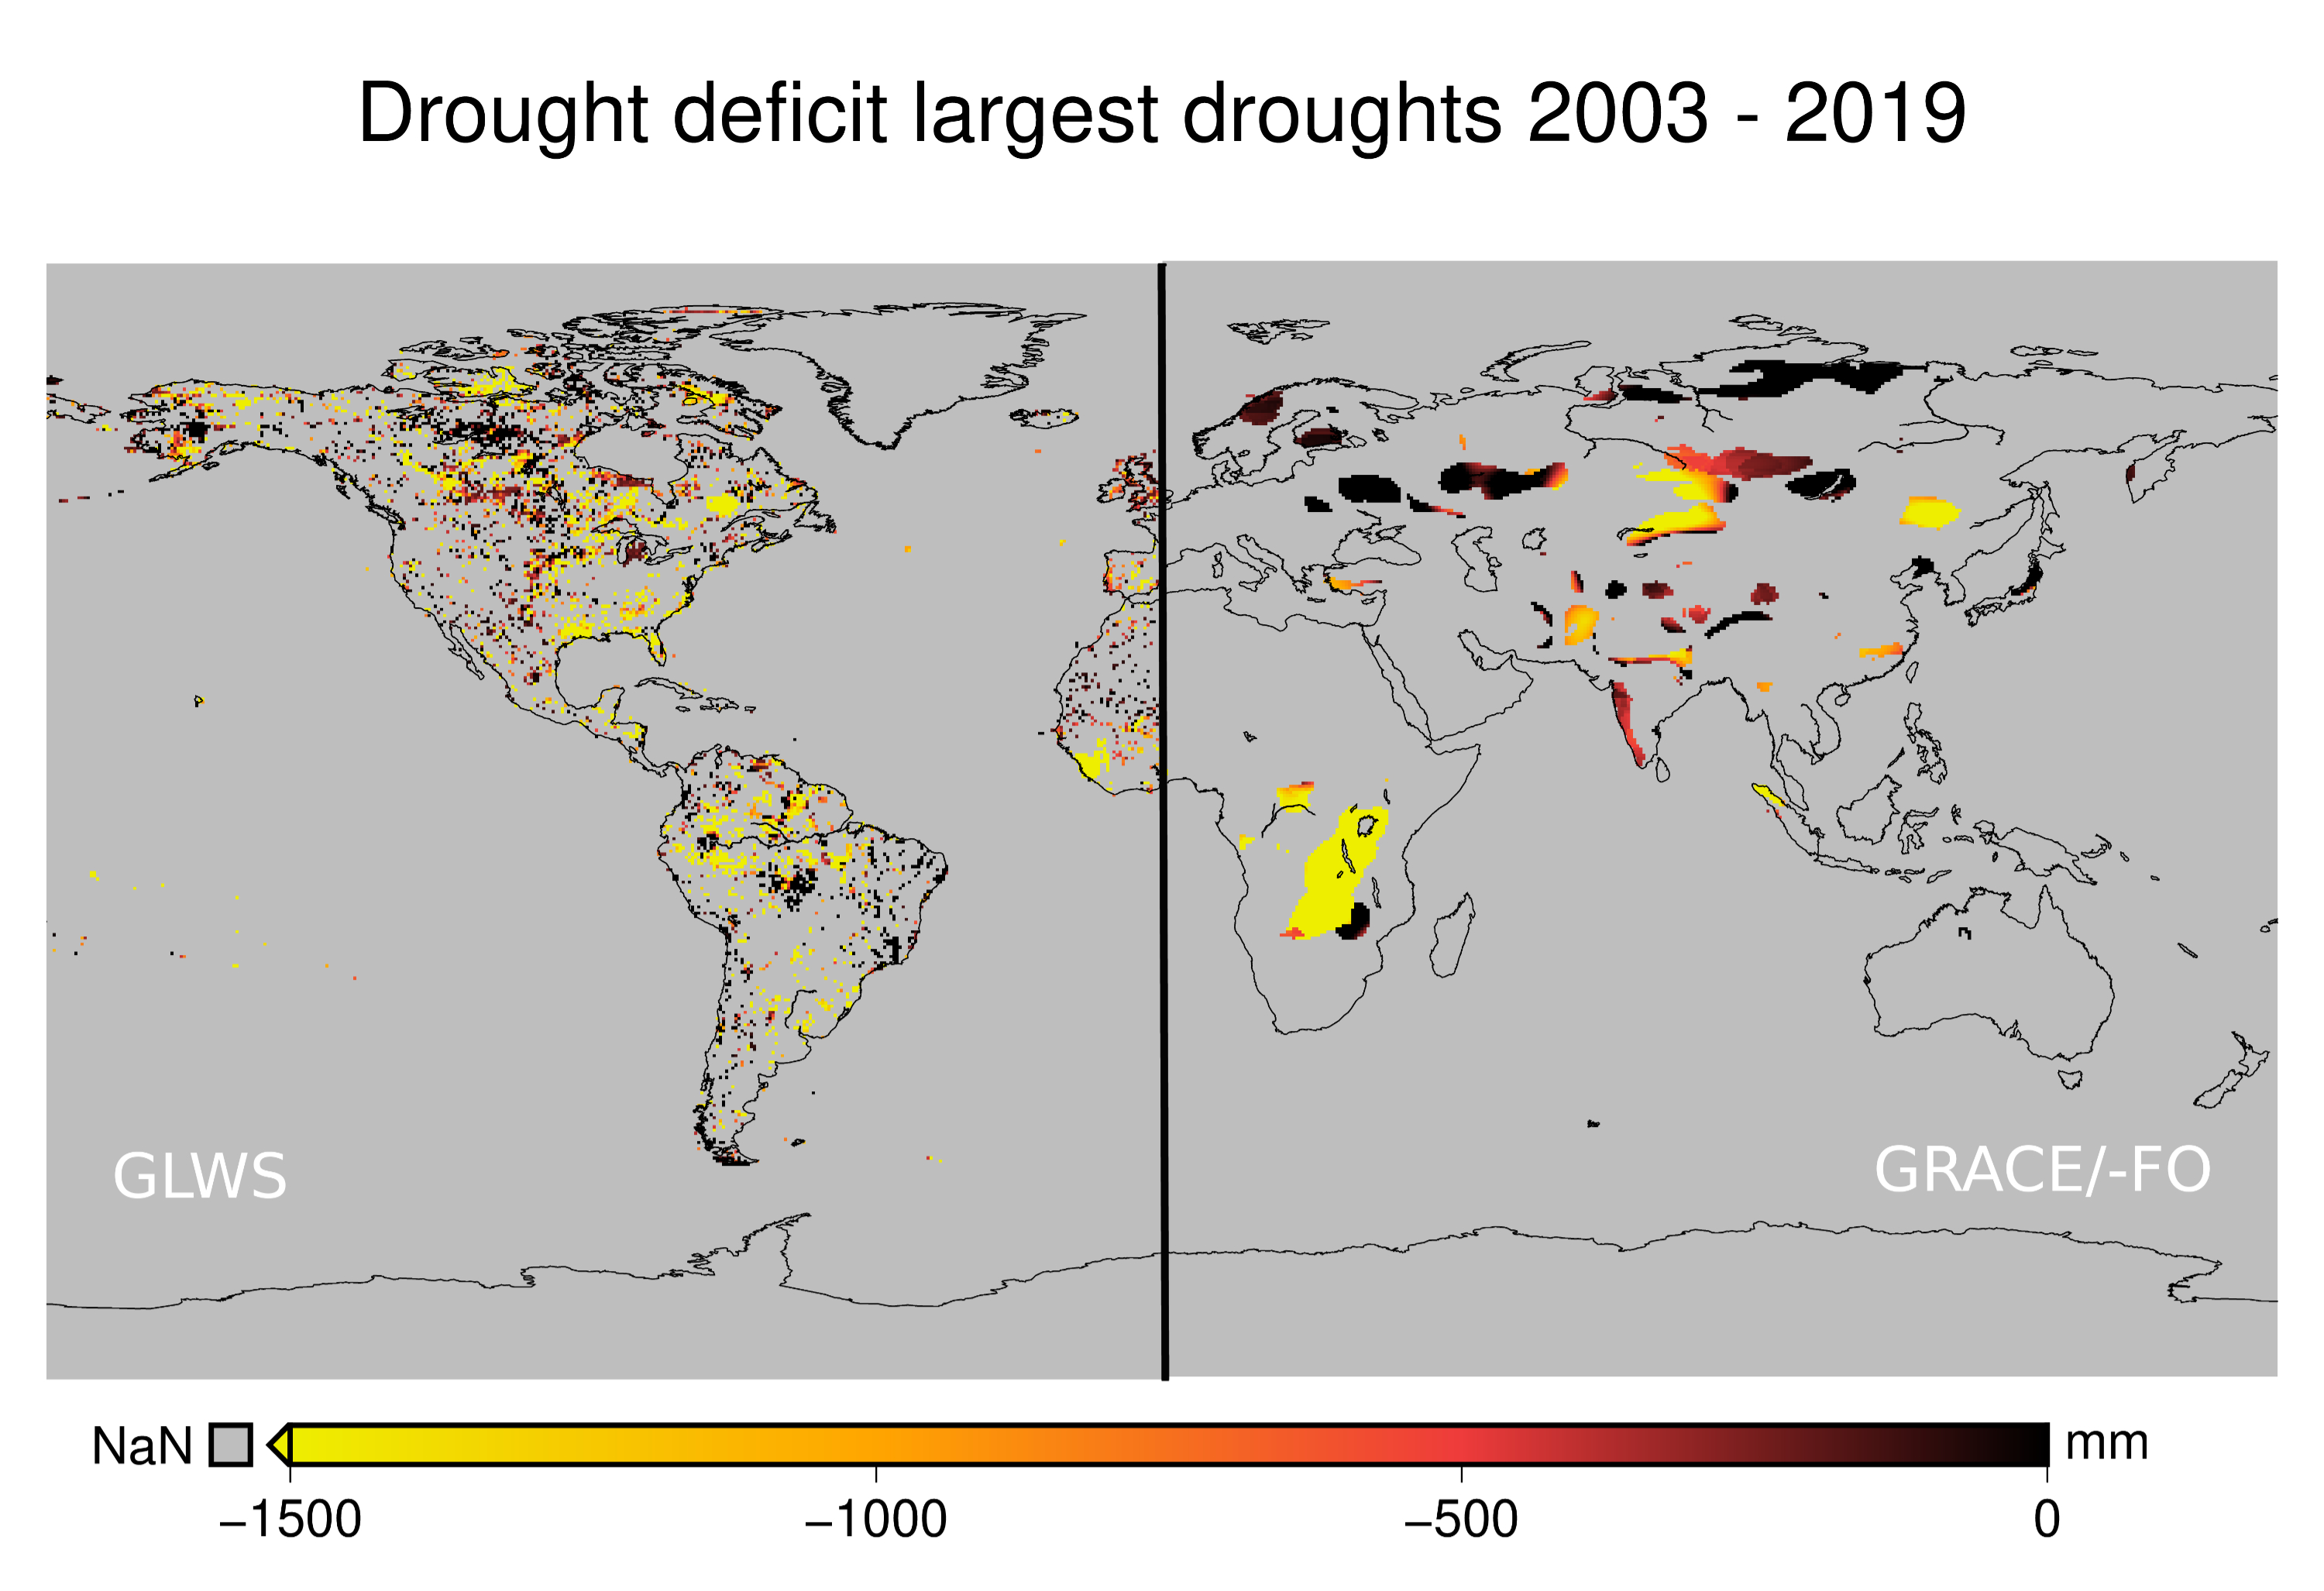 Wasserdefizit der längsten Dürren (mindestens 9 Monate) in den letzten zwanzig Jahren in den neuen GLWS2.0-Daten (links) und in den GRACE/-FO Satellitendaten (rechts). Abbildung: Helena Gerdener